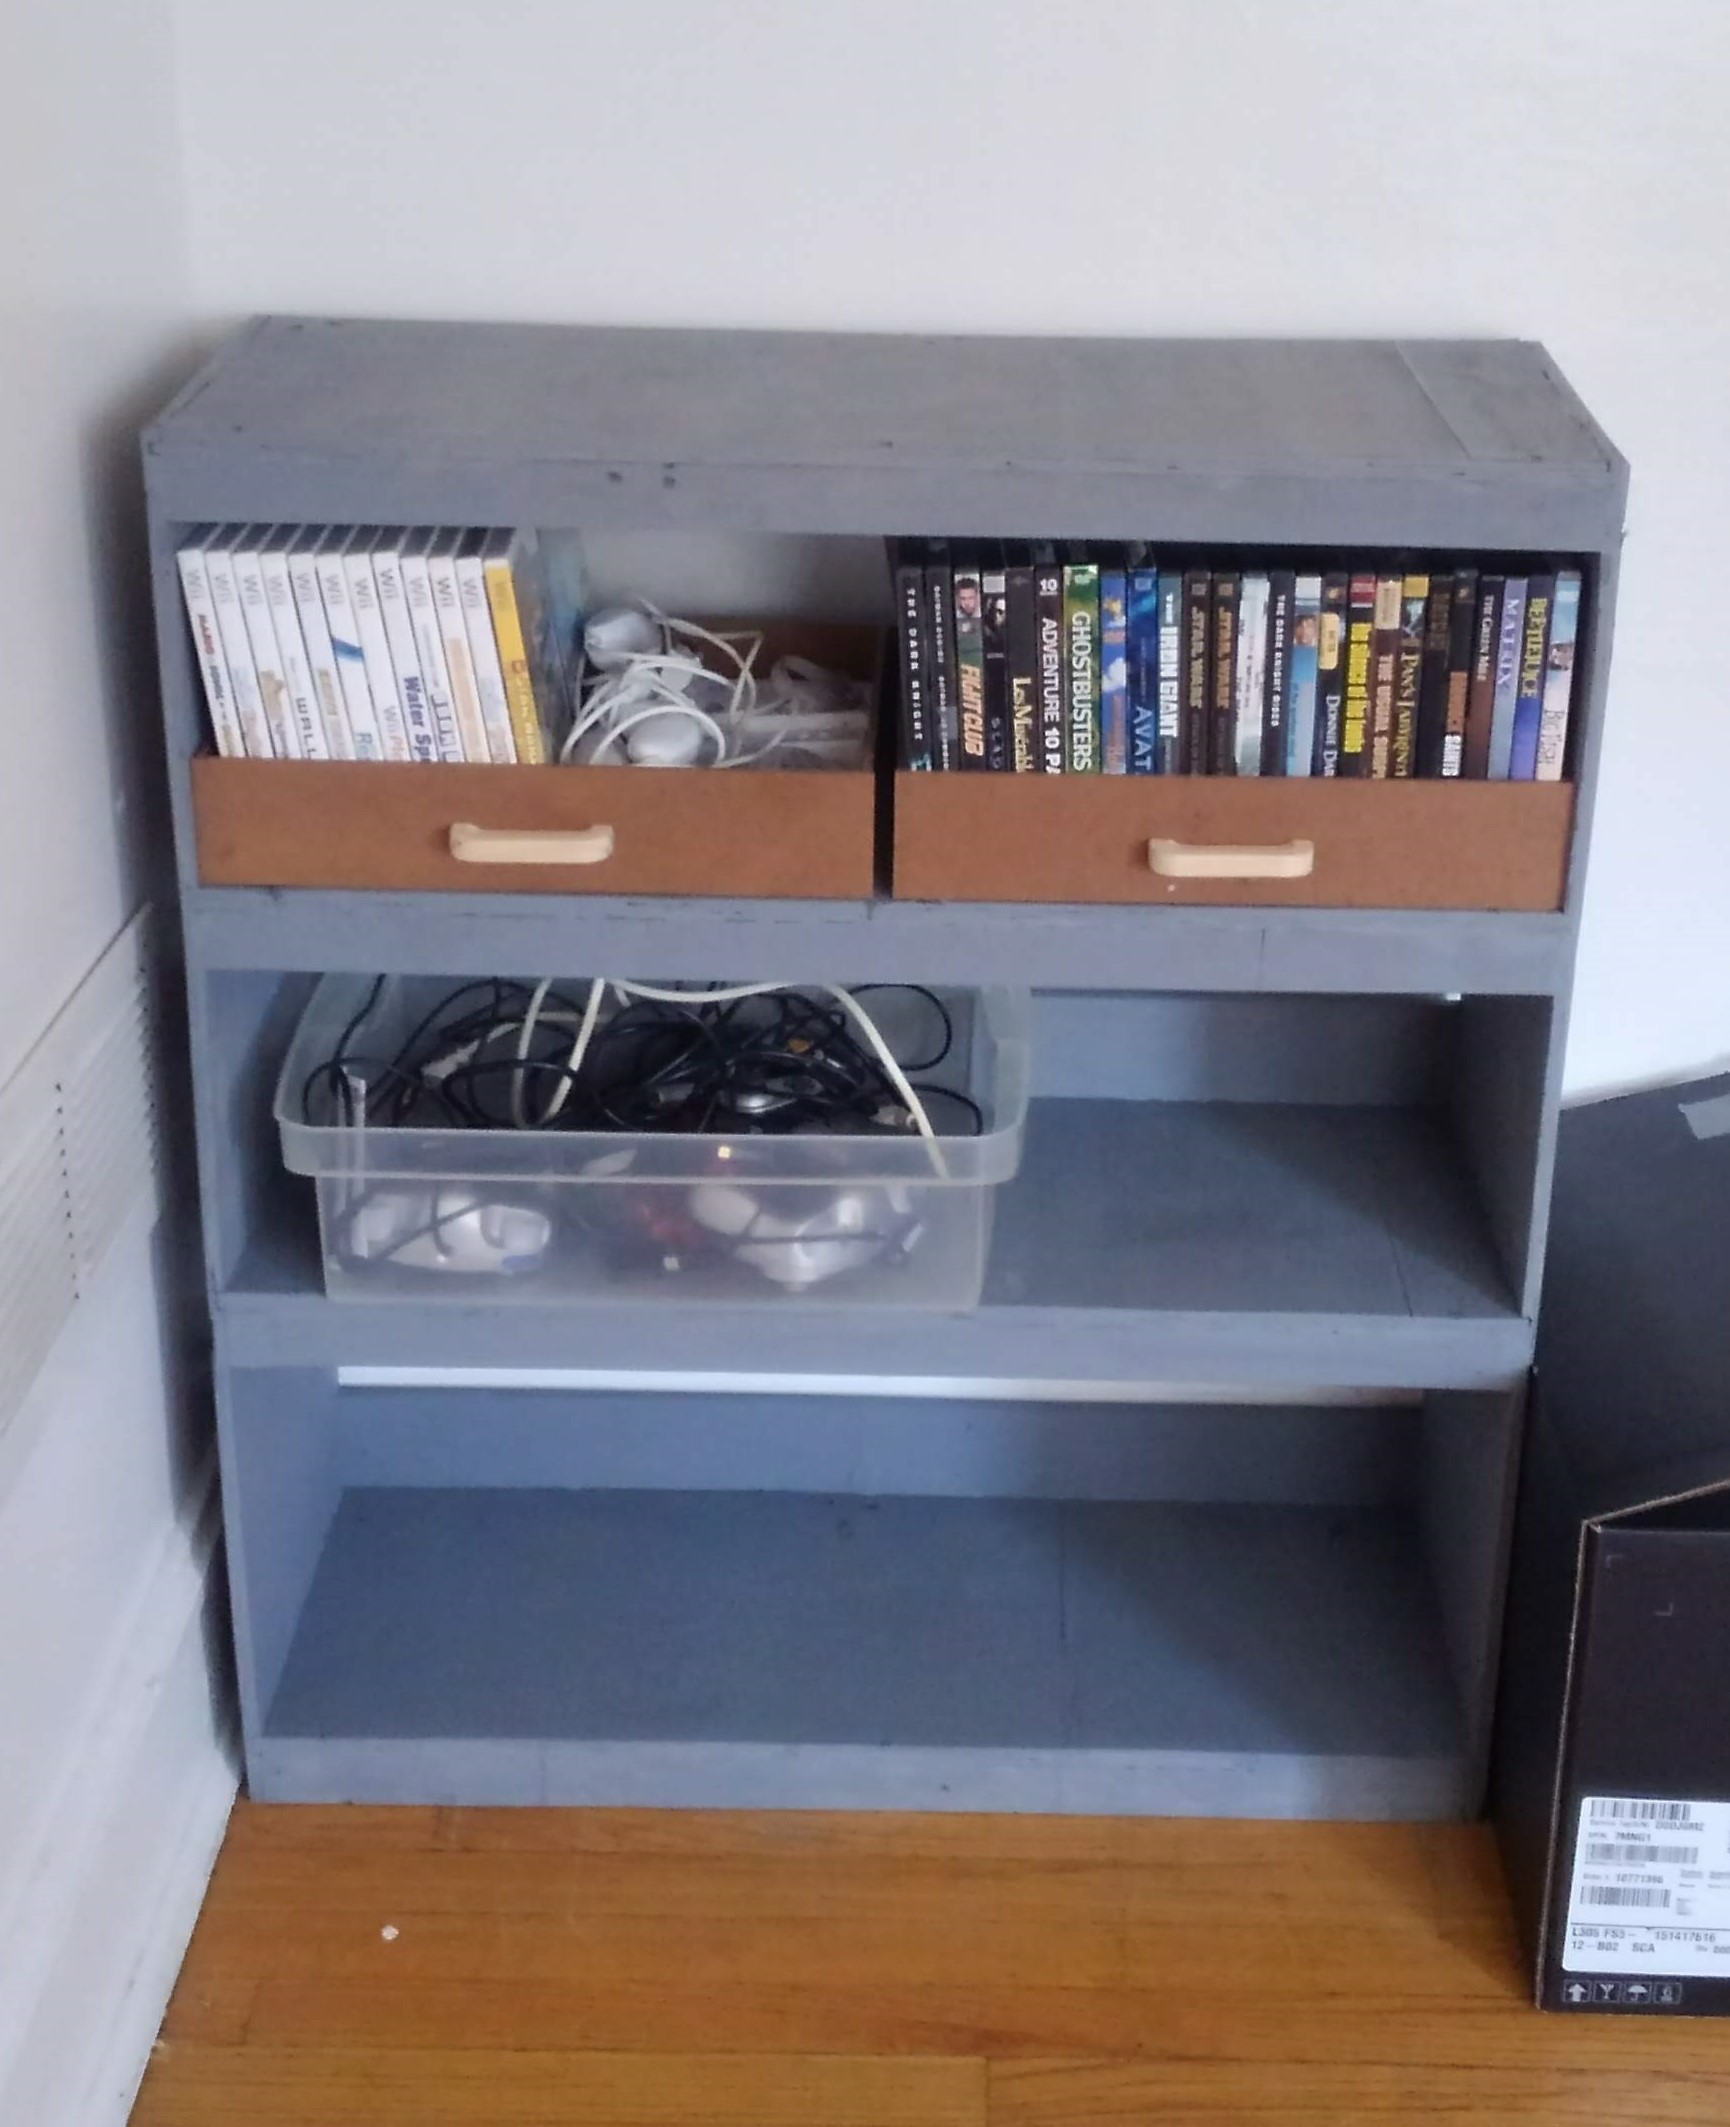 a gray shelf containing entertainment equipment